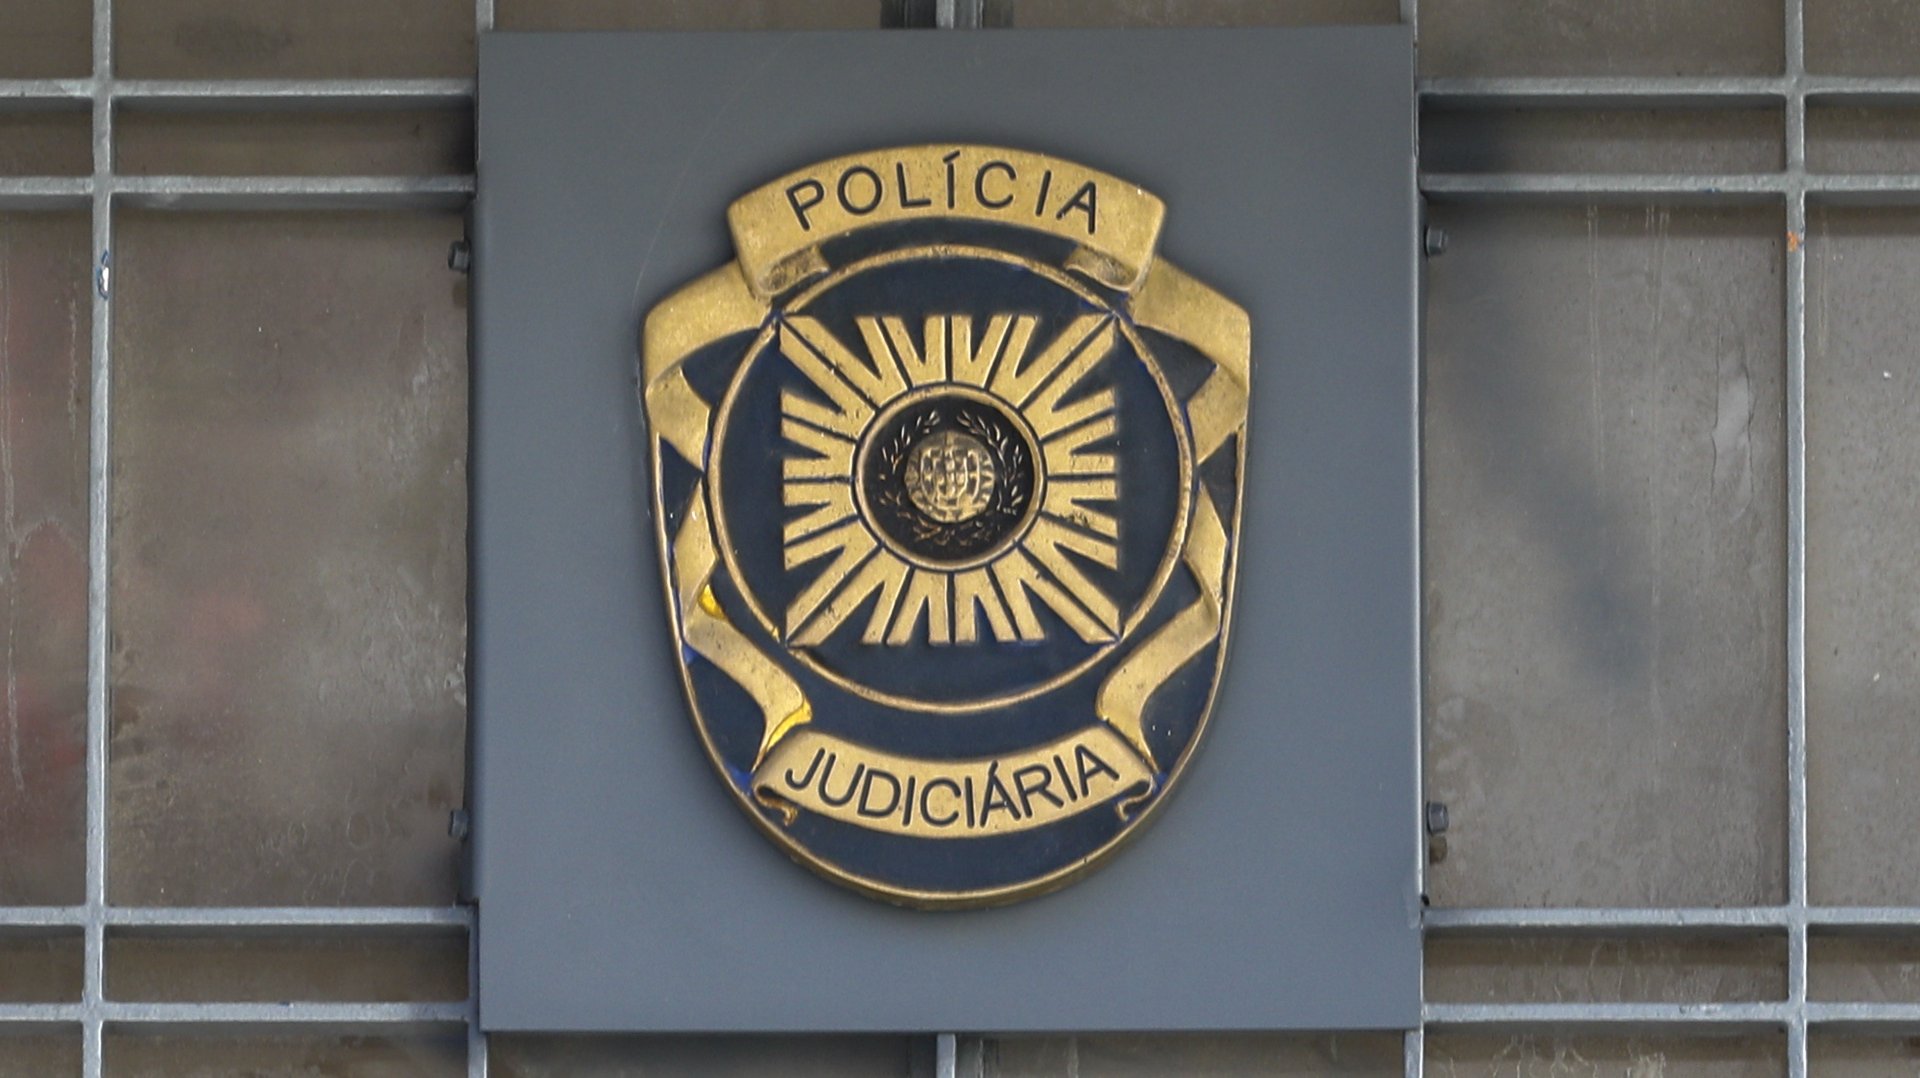 Polícia Judiciária, Lisboa